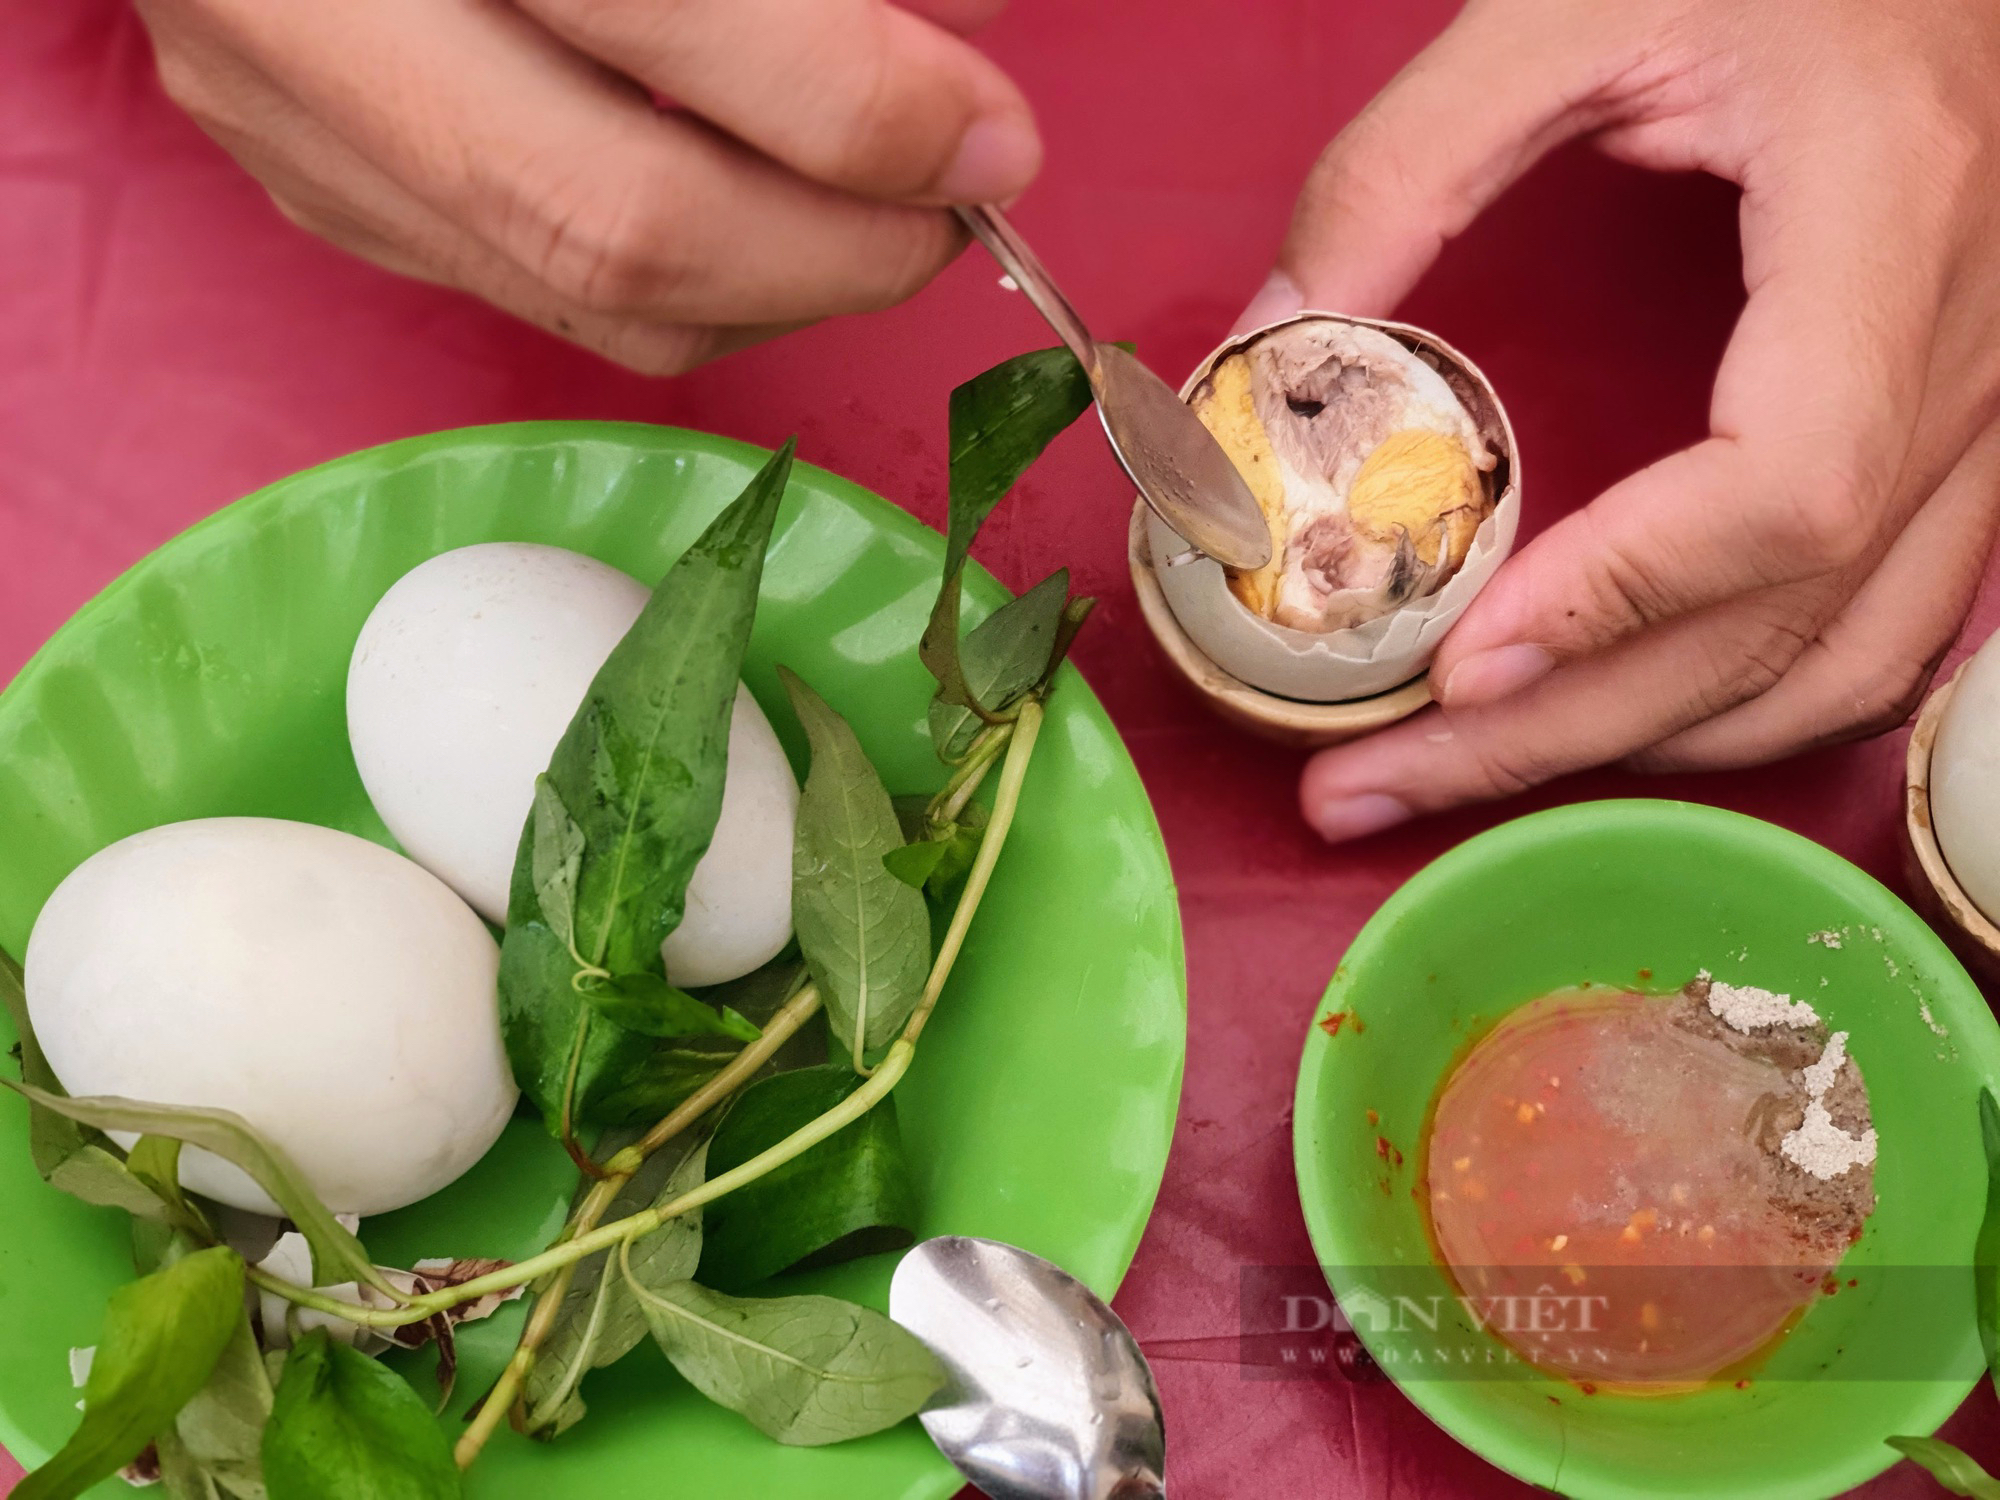 Sài Gòn quán: Quán hột vịt lộn nổi tiếng nhất khu nhà giàu Thảo Điền, 10 trứng úp mề như một - Ảnh 1.